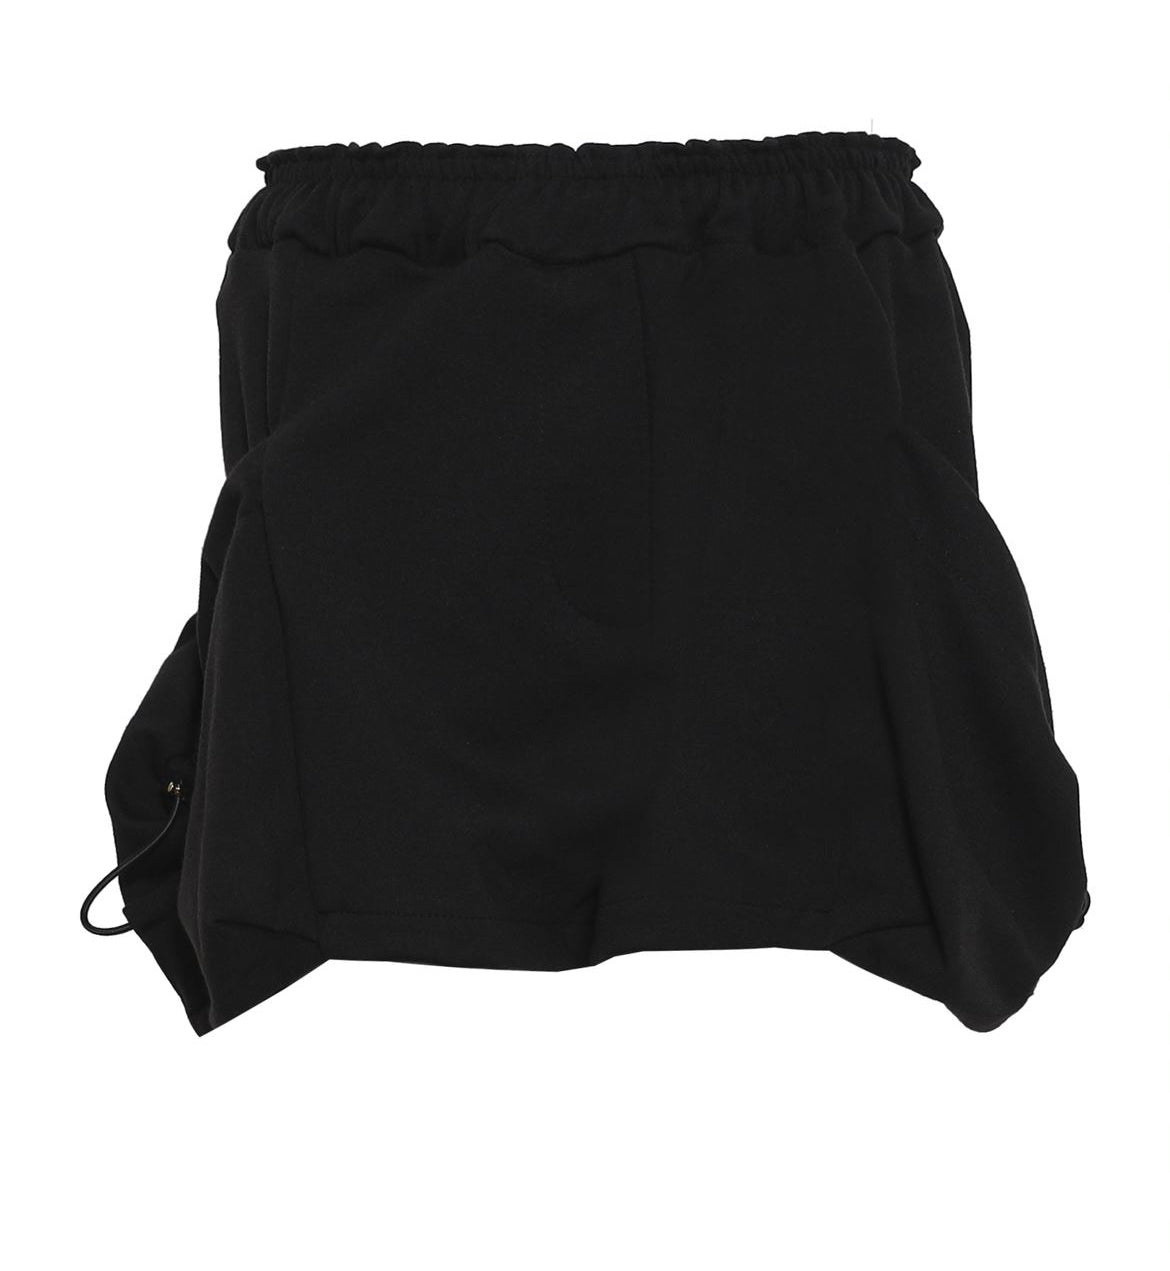 Byblos Junior Black Shorts 12266